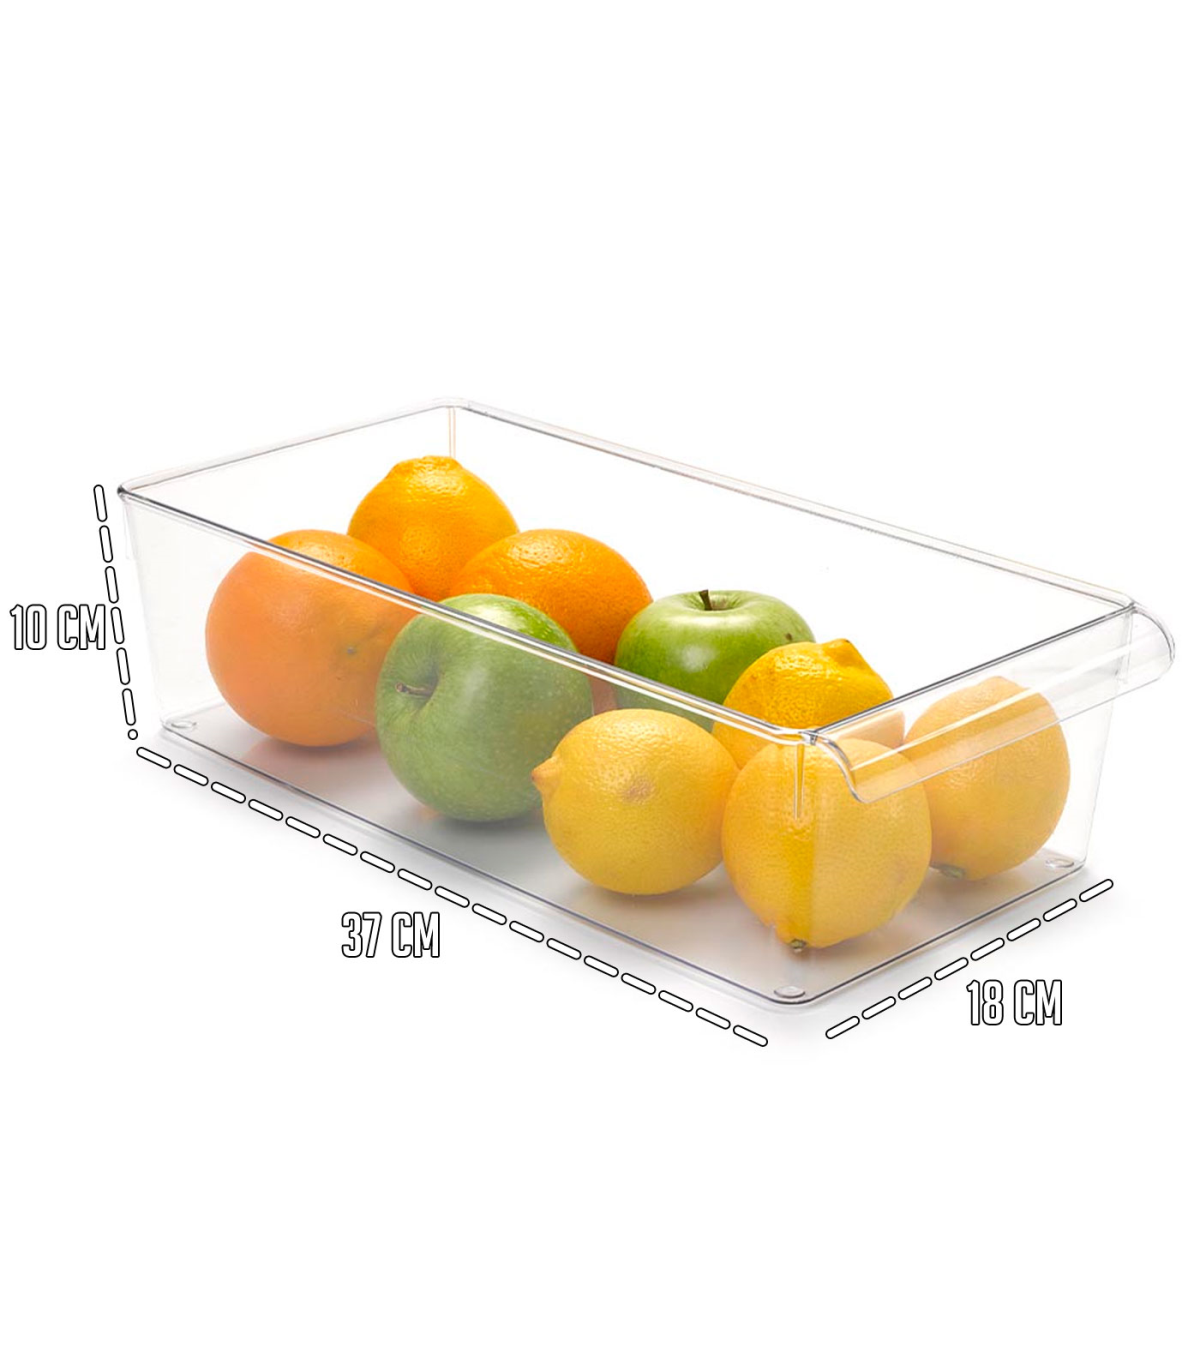 Tradineur - Cajón organizador reutilizable para frigorifico Nº 11 -  Fabricado en plástico - Recipiente de plástico transparente